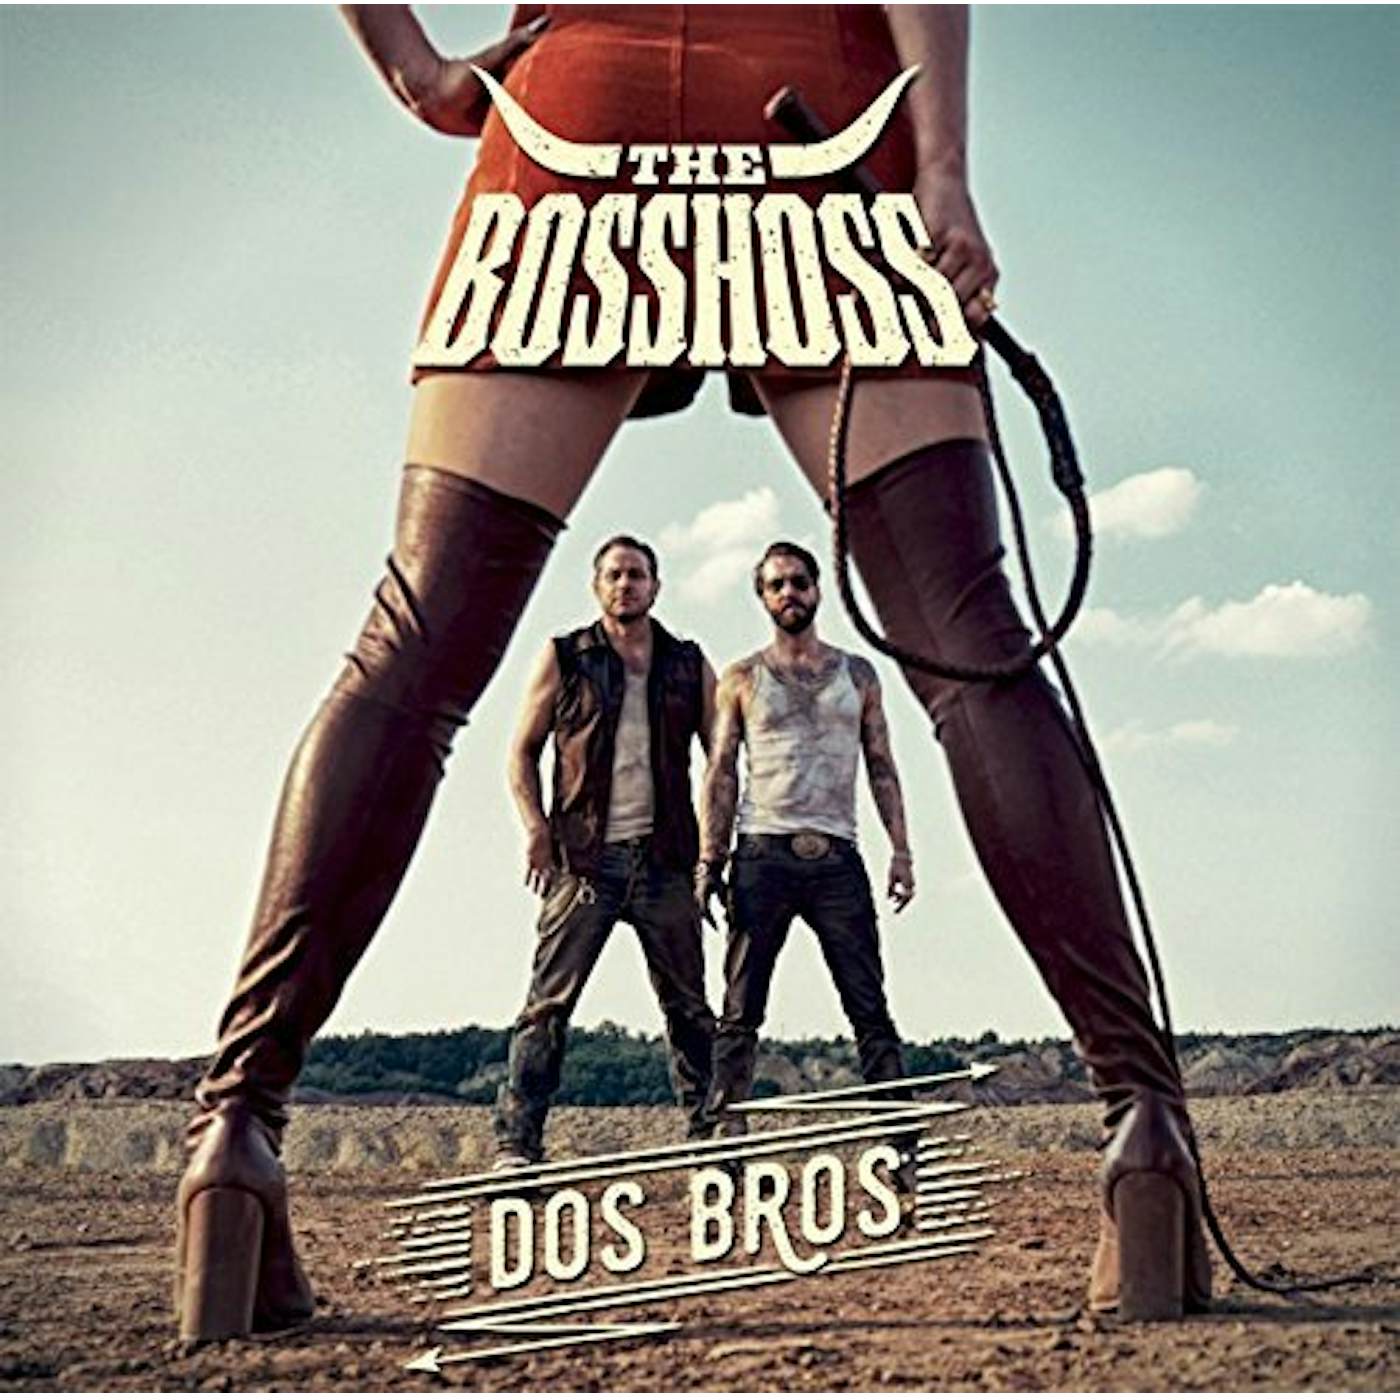 The BossHoss DOS BROS CD